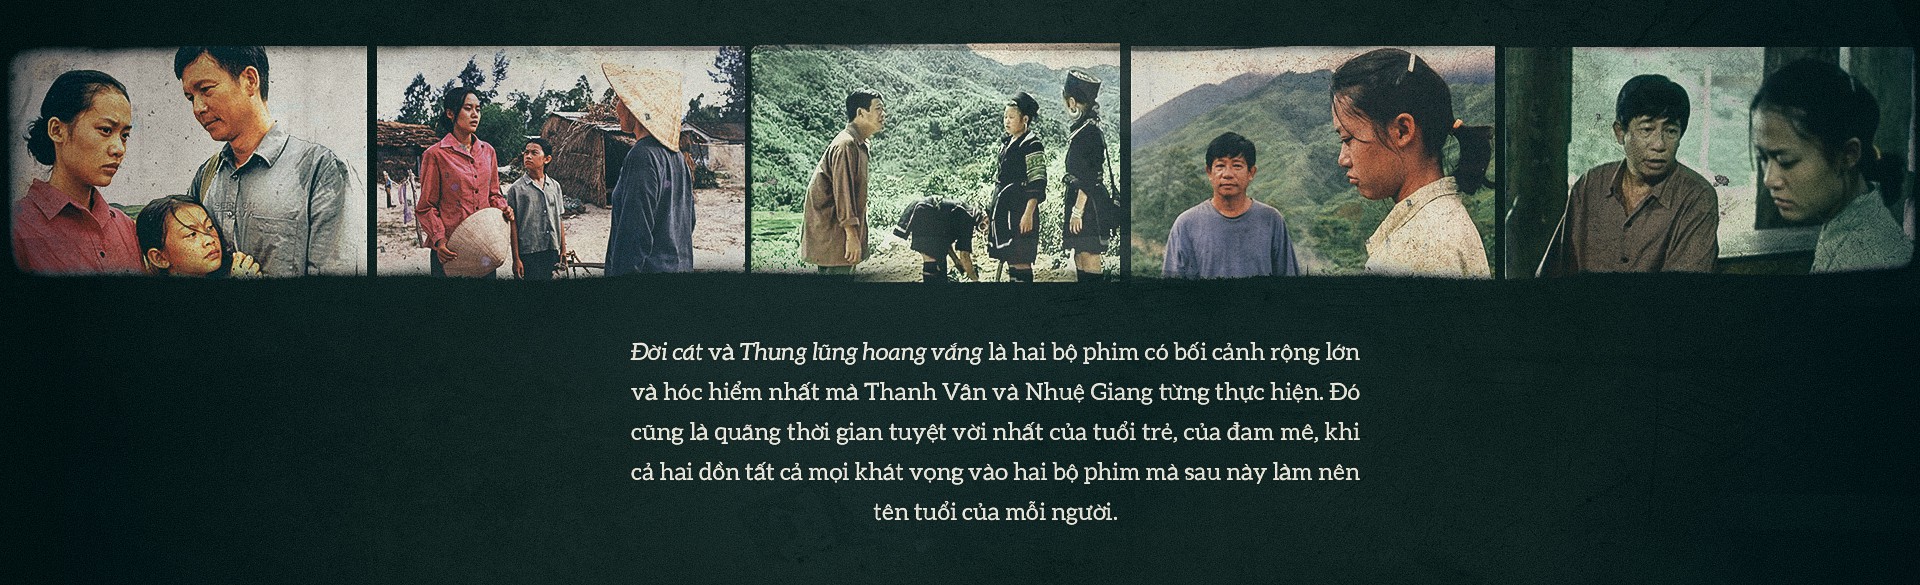 Thanh Vân - Nhuệ Giang: Đổ bóng xuống đời nhau - Ảnh 9.